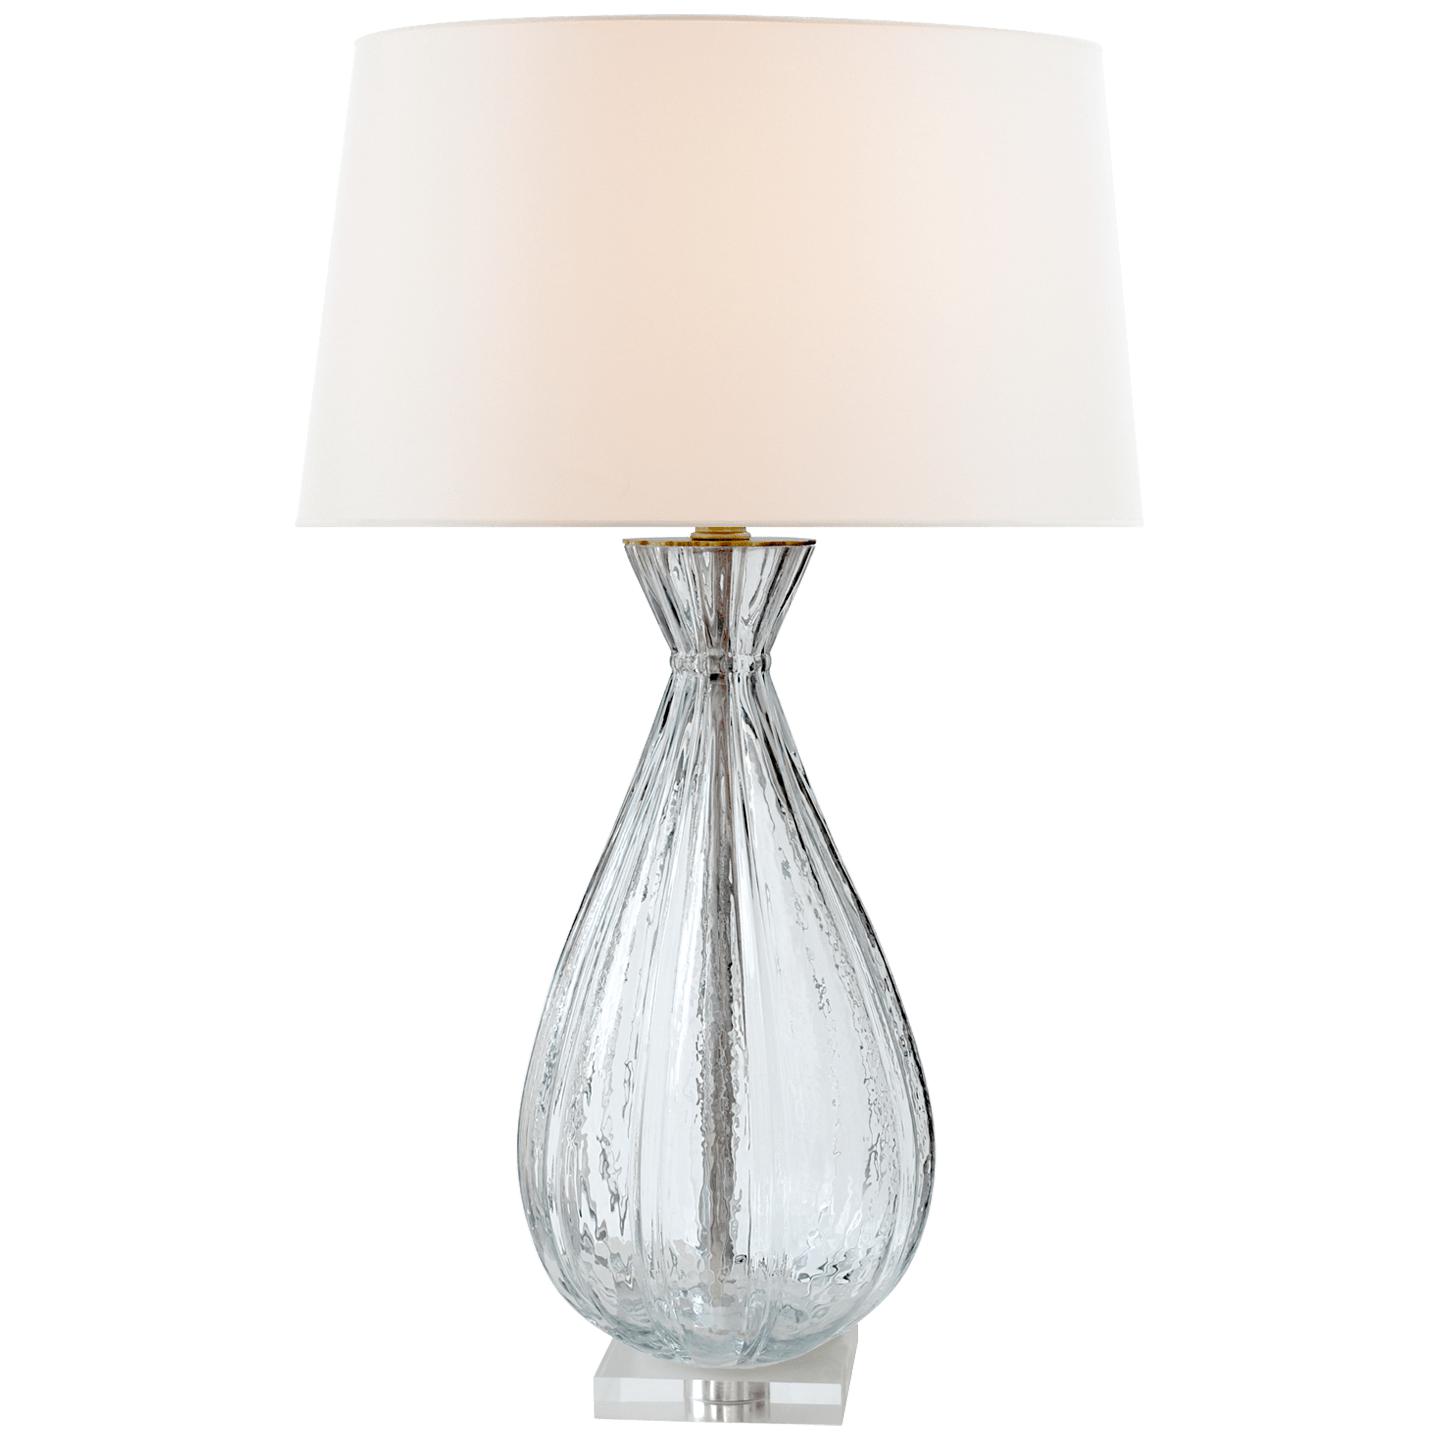 Купить Настольная лампа Treviso Large Table Lamp в интернет-магазине roooms.ru